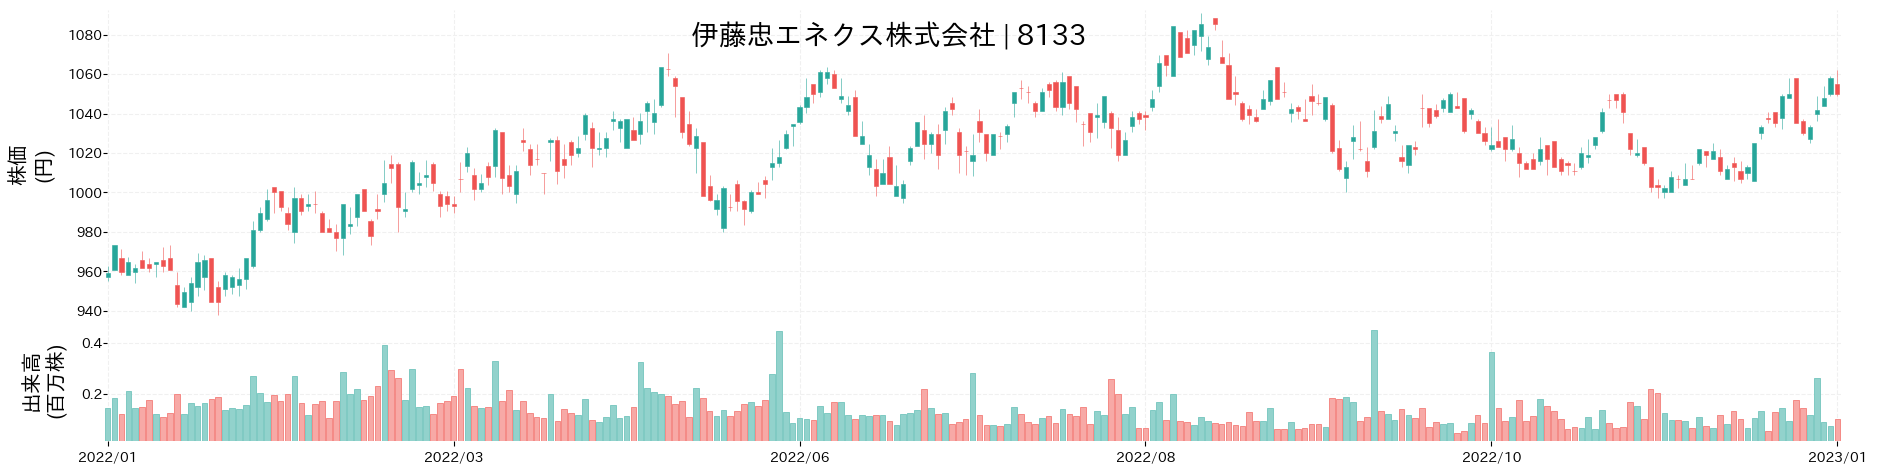 伊藤忠エネクスの株価推移(2022)